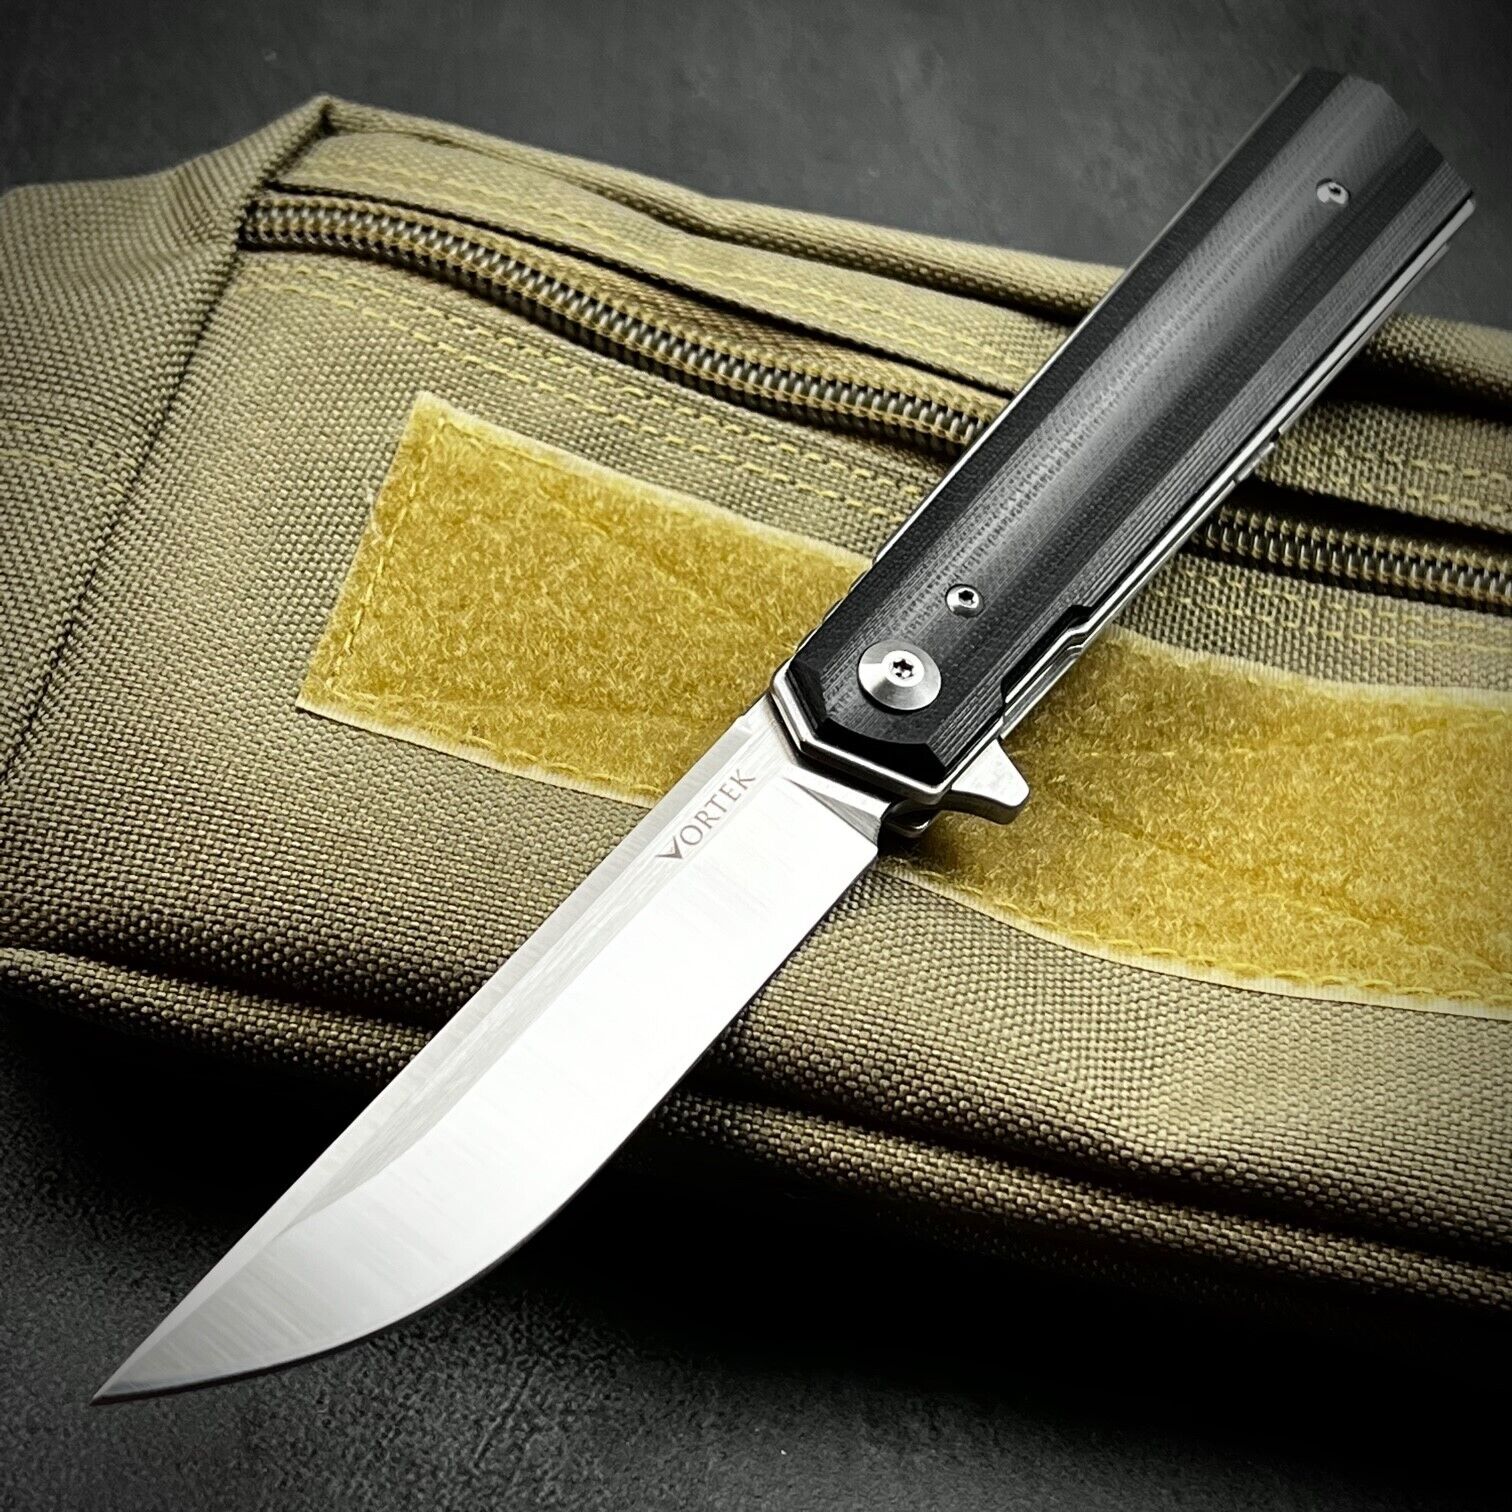 VORTEK APACHE Black G10 Fast Ball Bearing Flipper Blade EDC Folding Pocket Knife